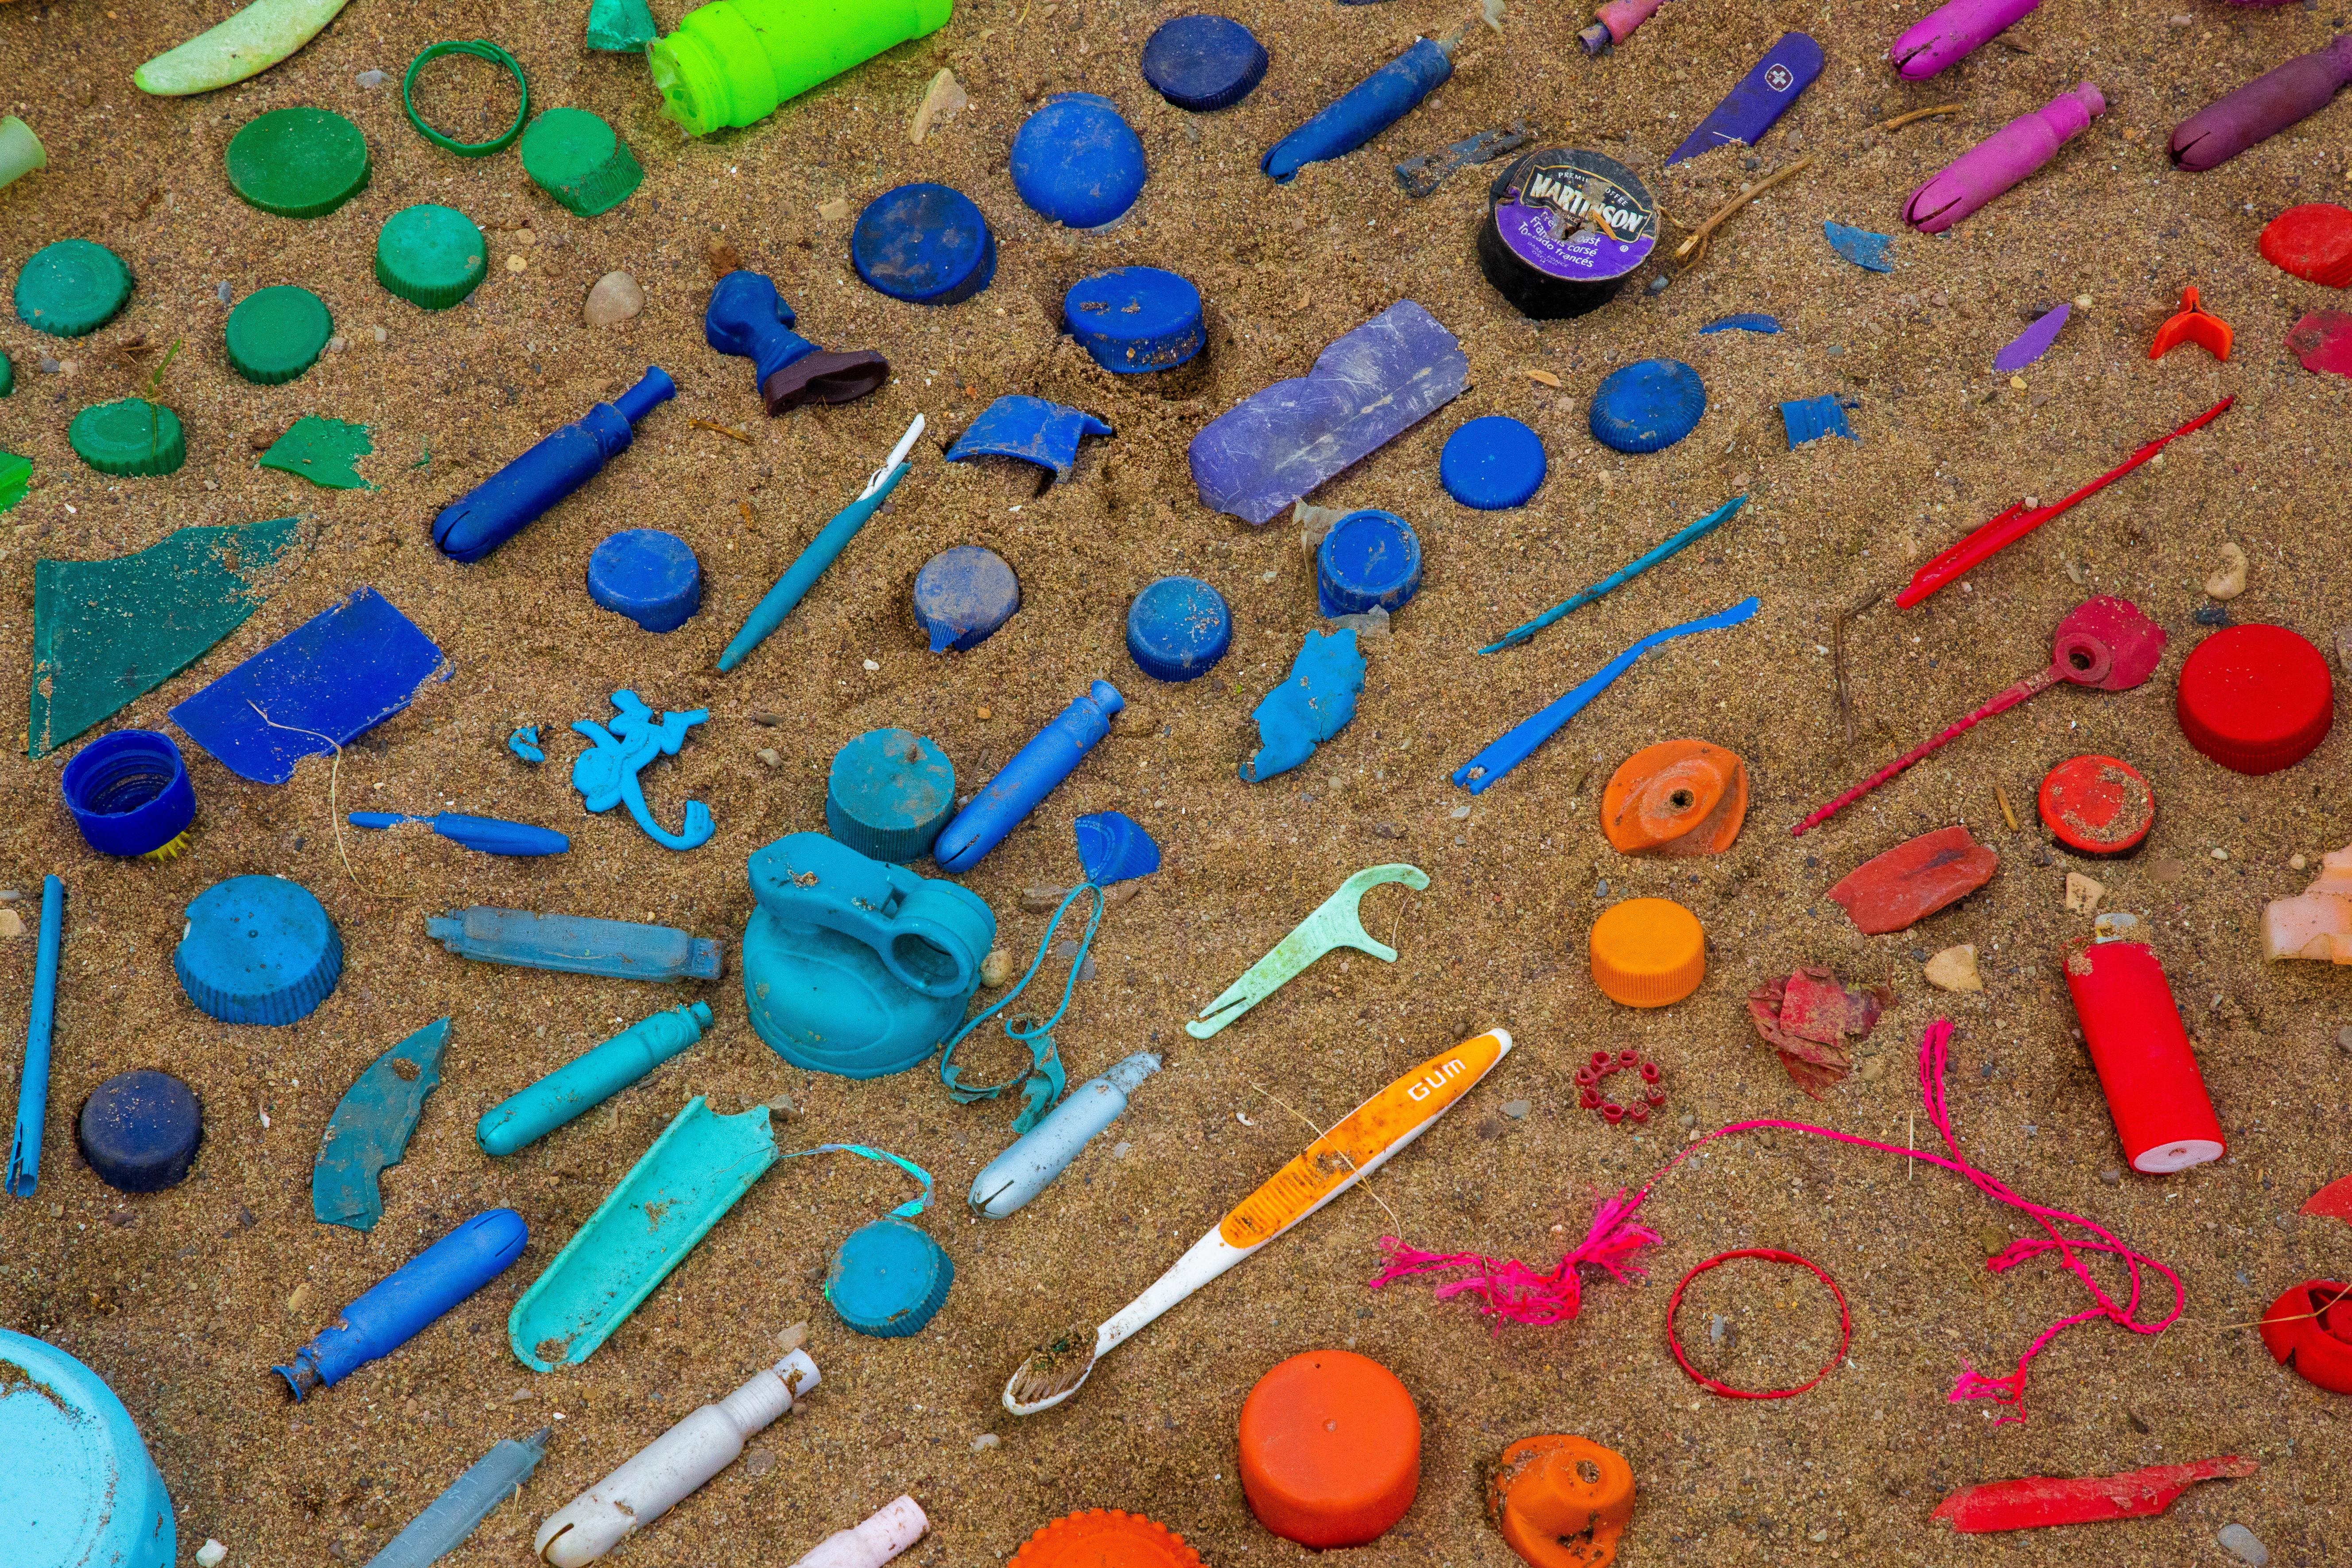 Plastic garbage rainbow